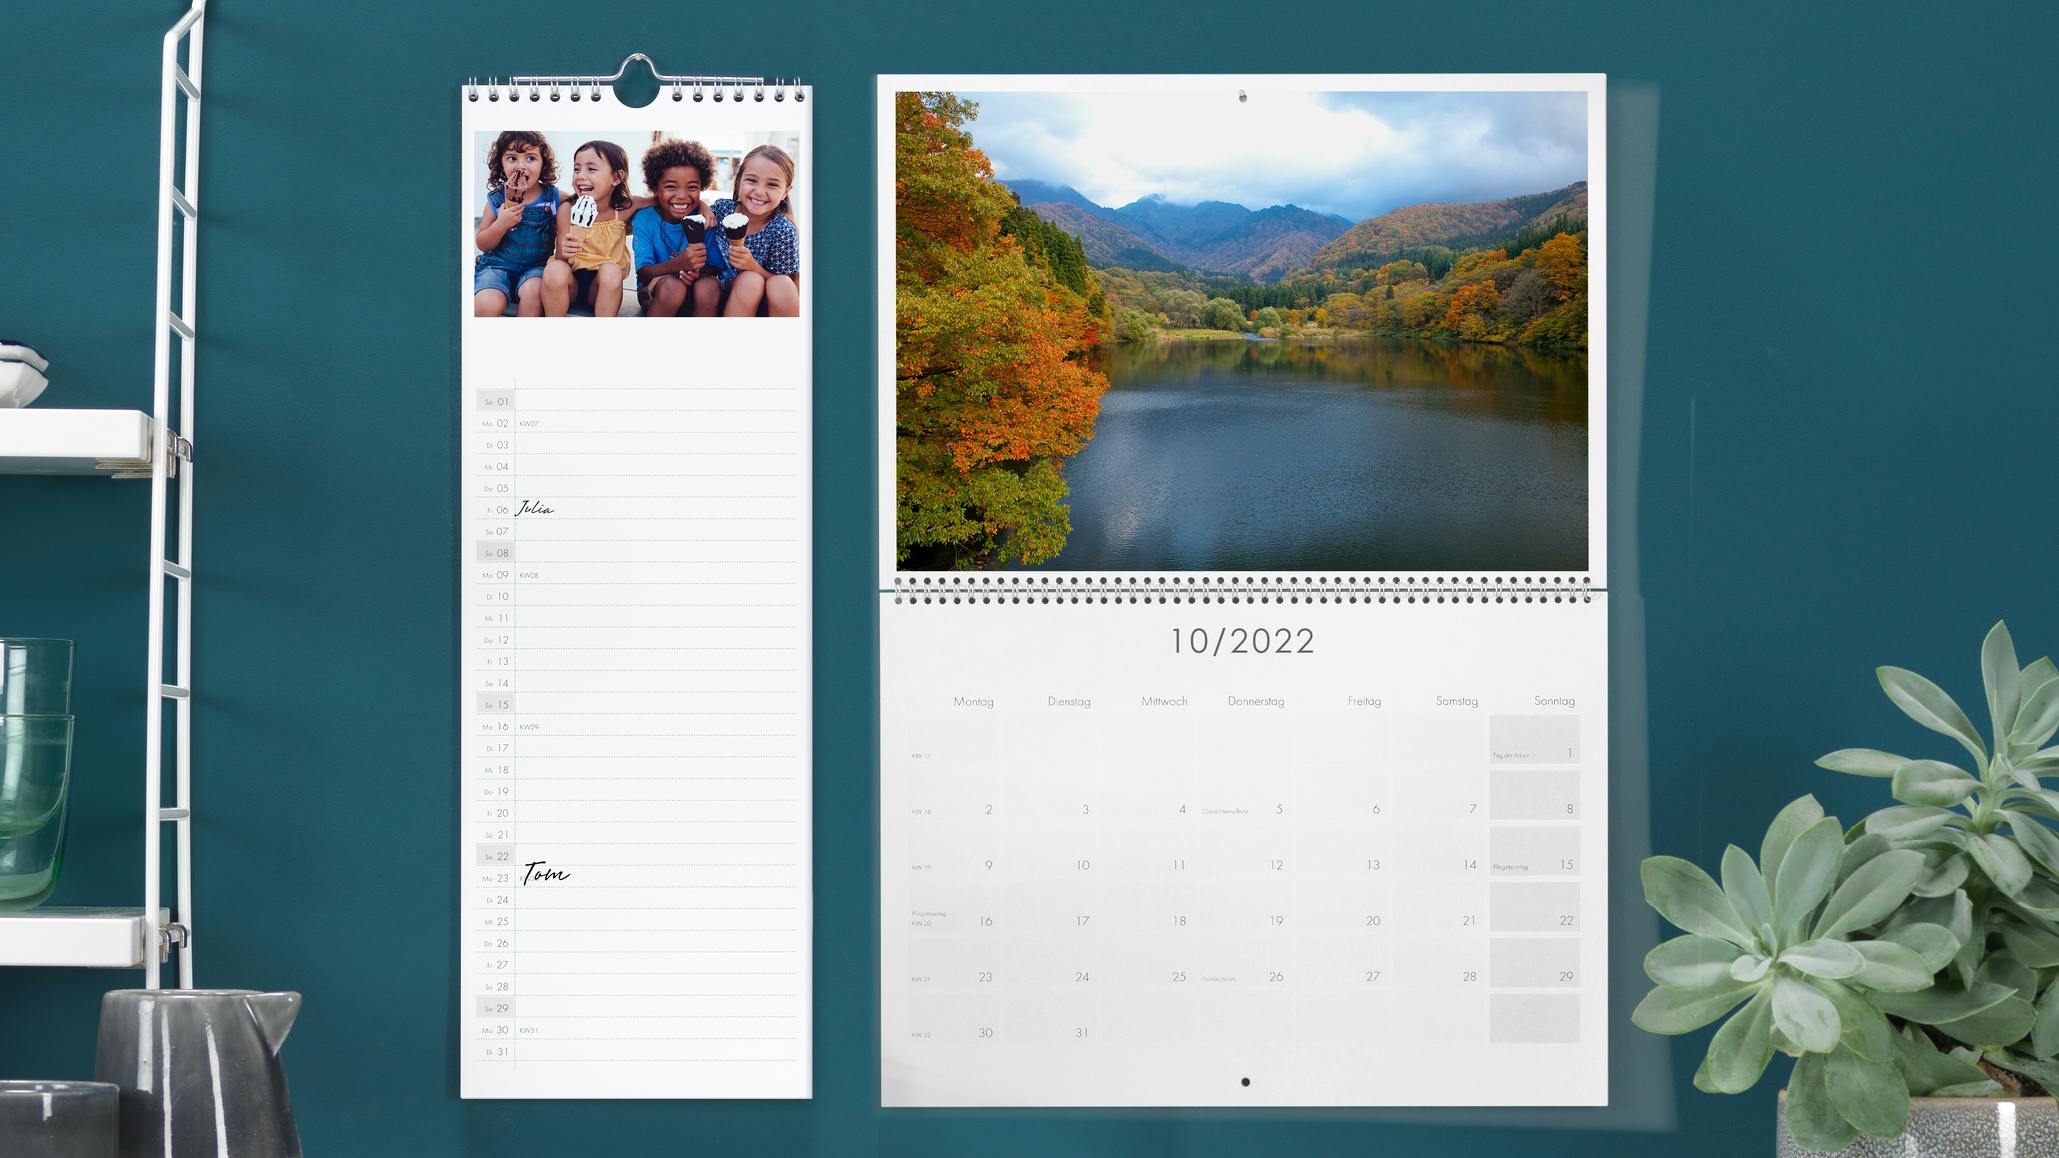 Calendarios organizadores o de cocina con fotos de un paisaje y unos niños en una pared azul